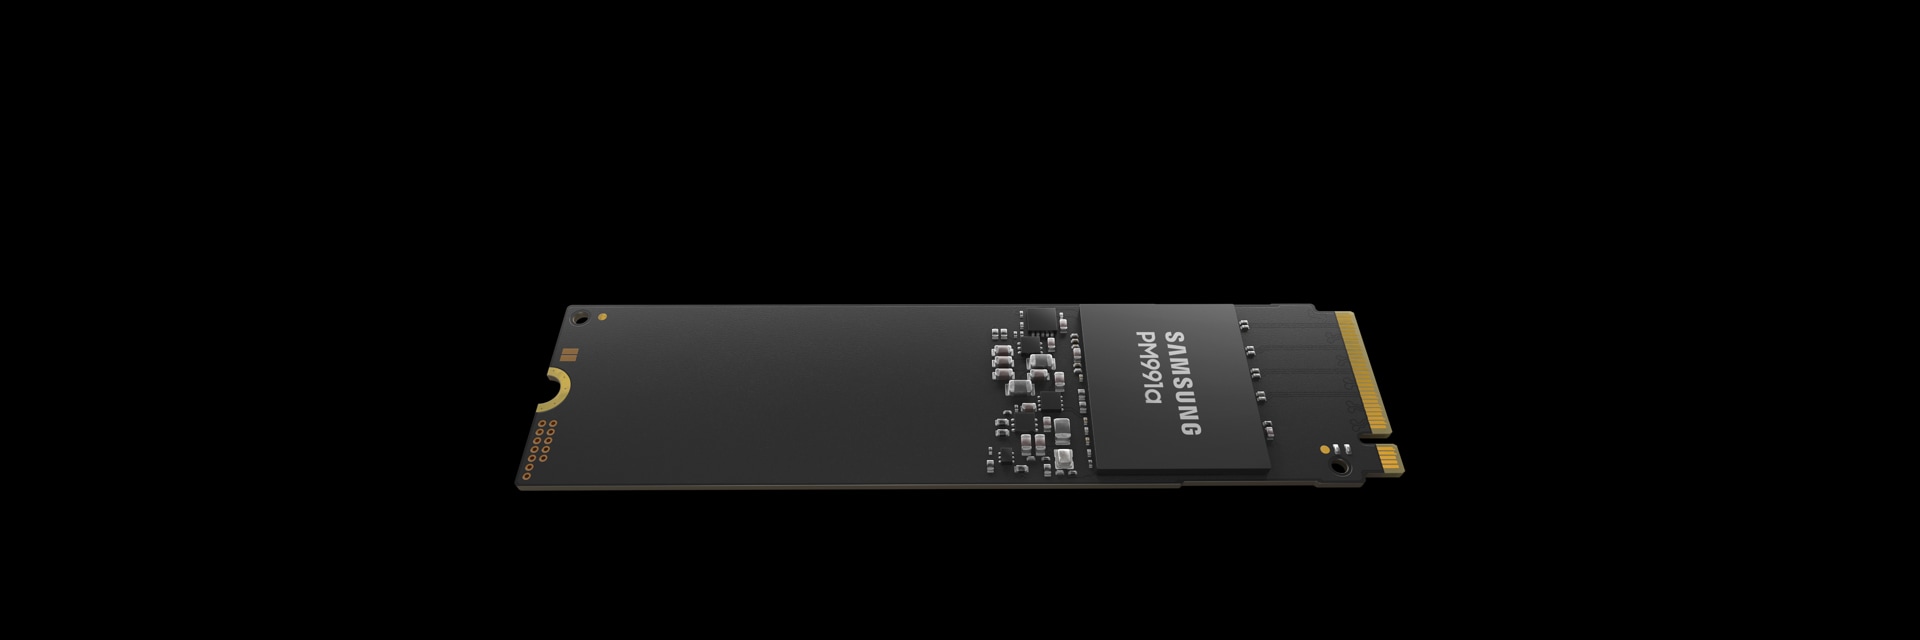 サムスン半導体のClient SSD、PC向けに新たに登場した理想的なSSDの性能